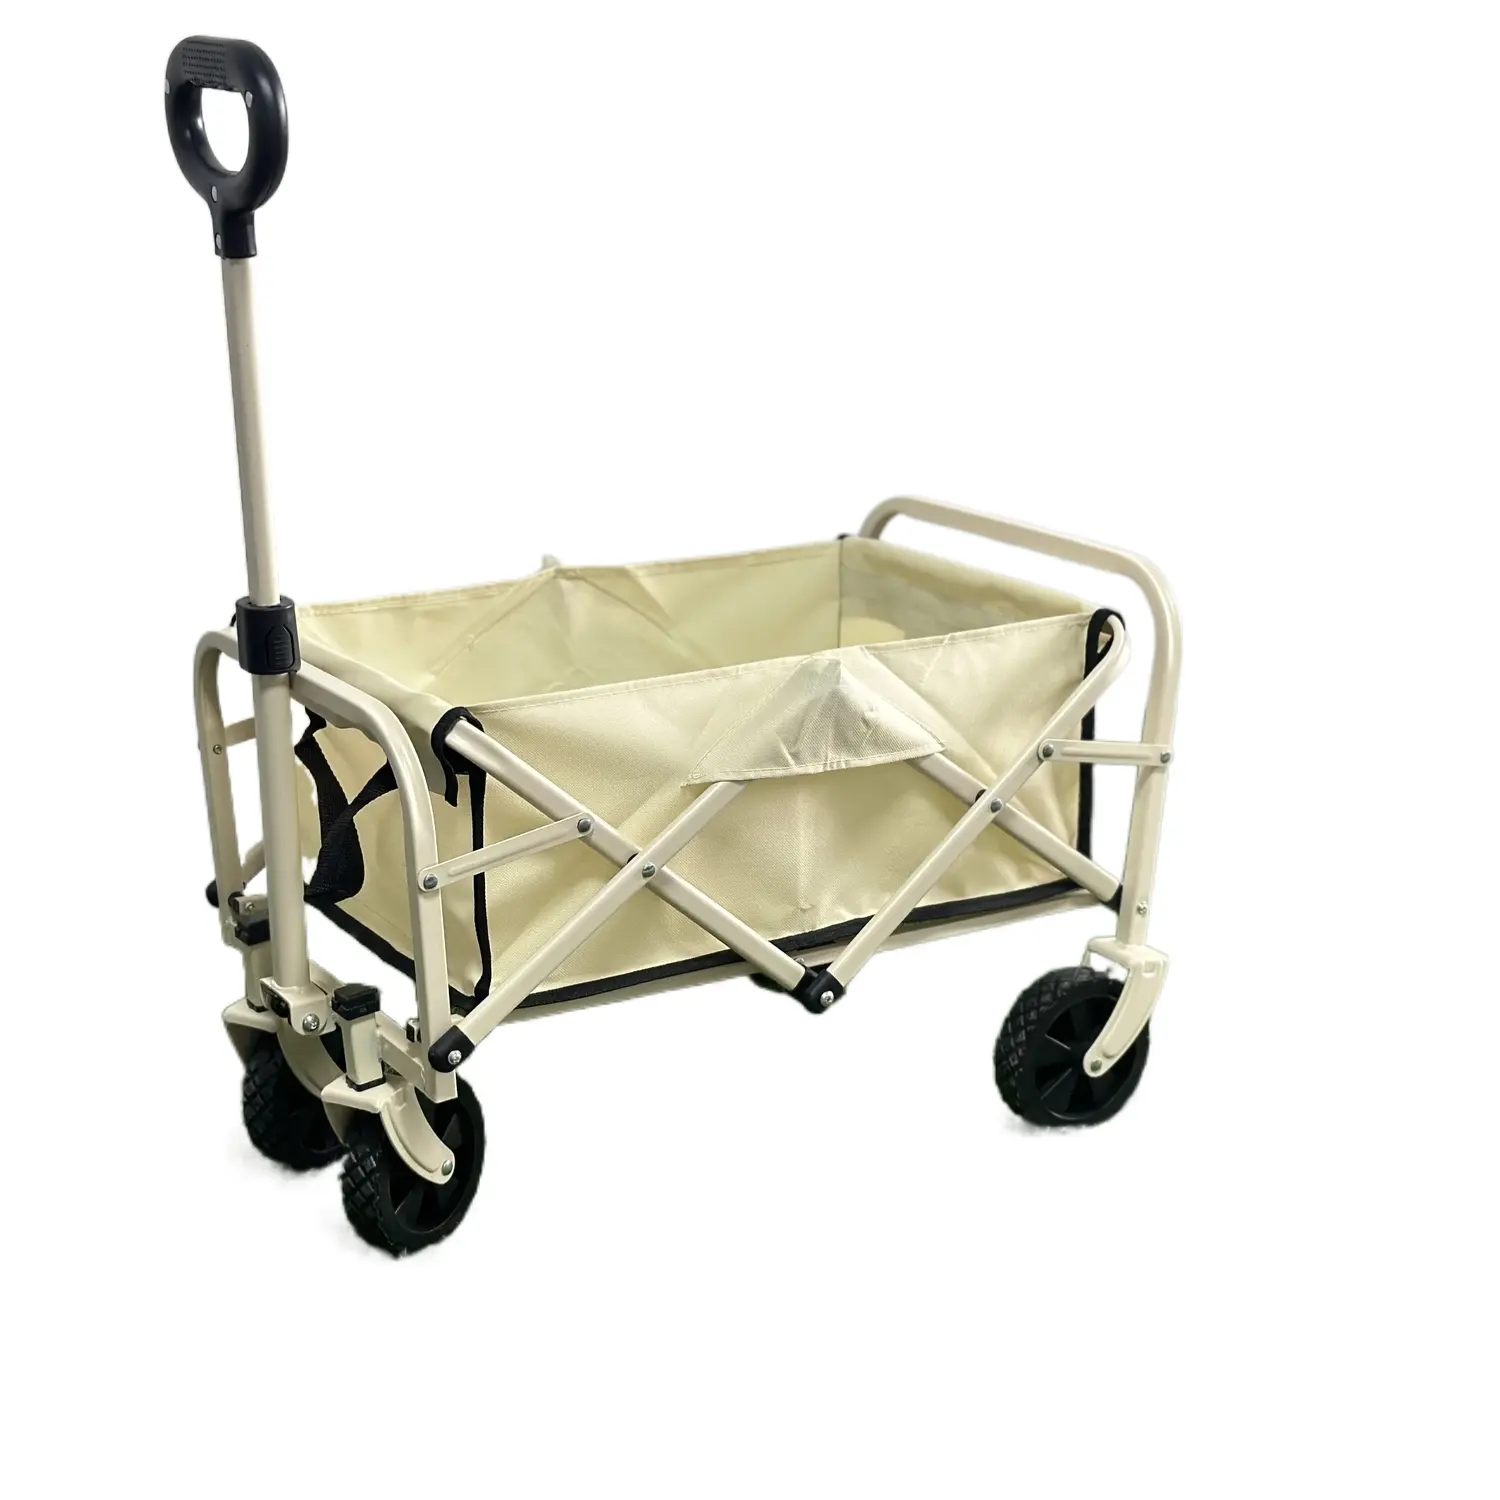 Outdoor Camping Portátil Dobrável Mão Carrinhos Multi funcional Trolleys rodas Picnic Beach Cart